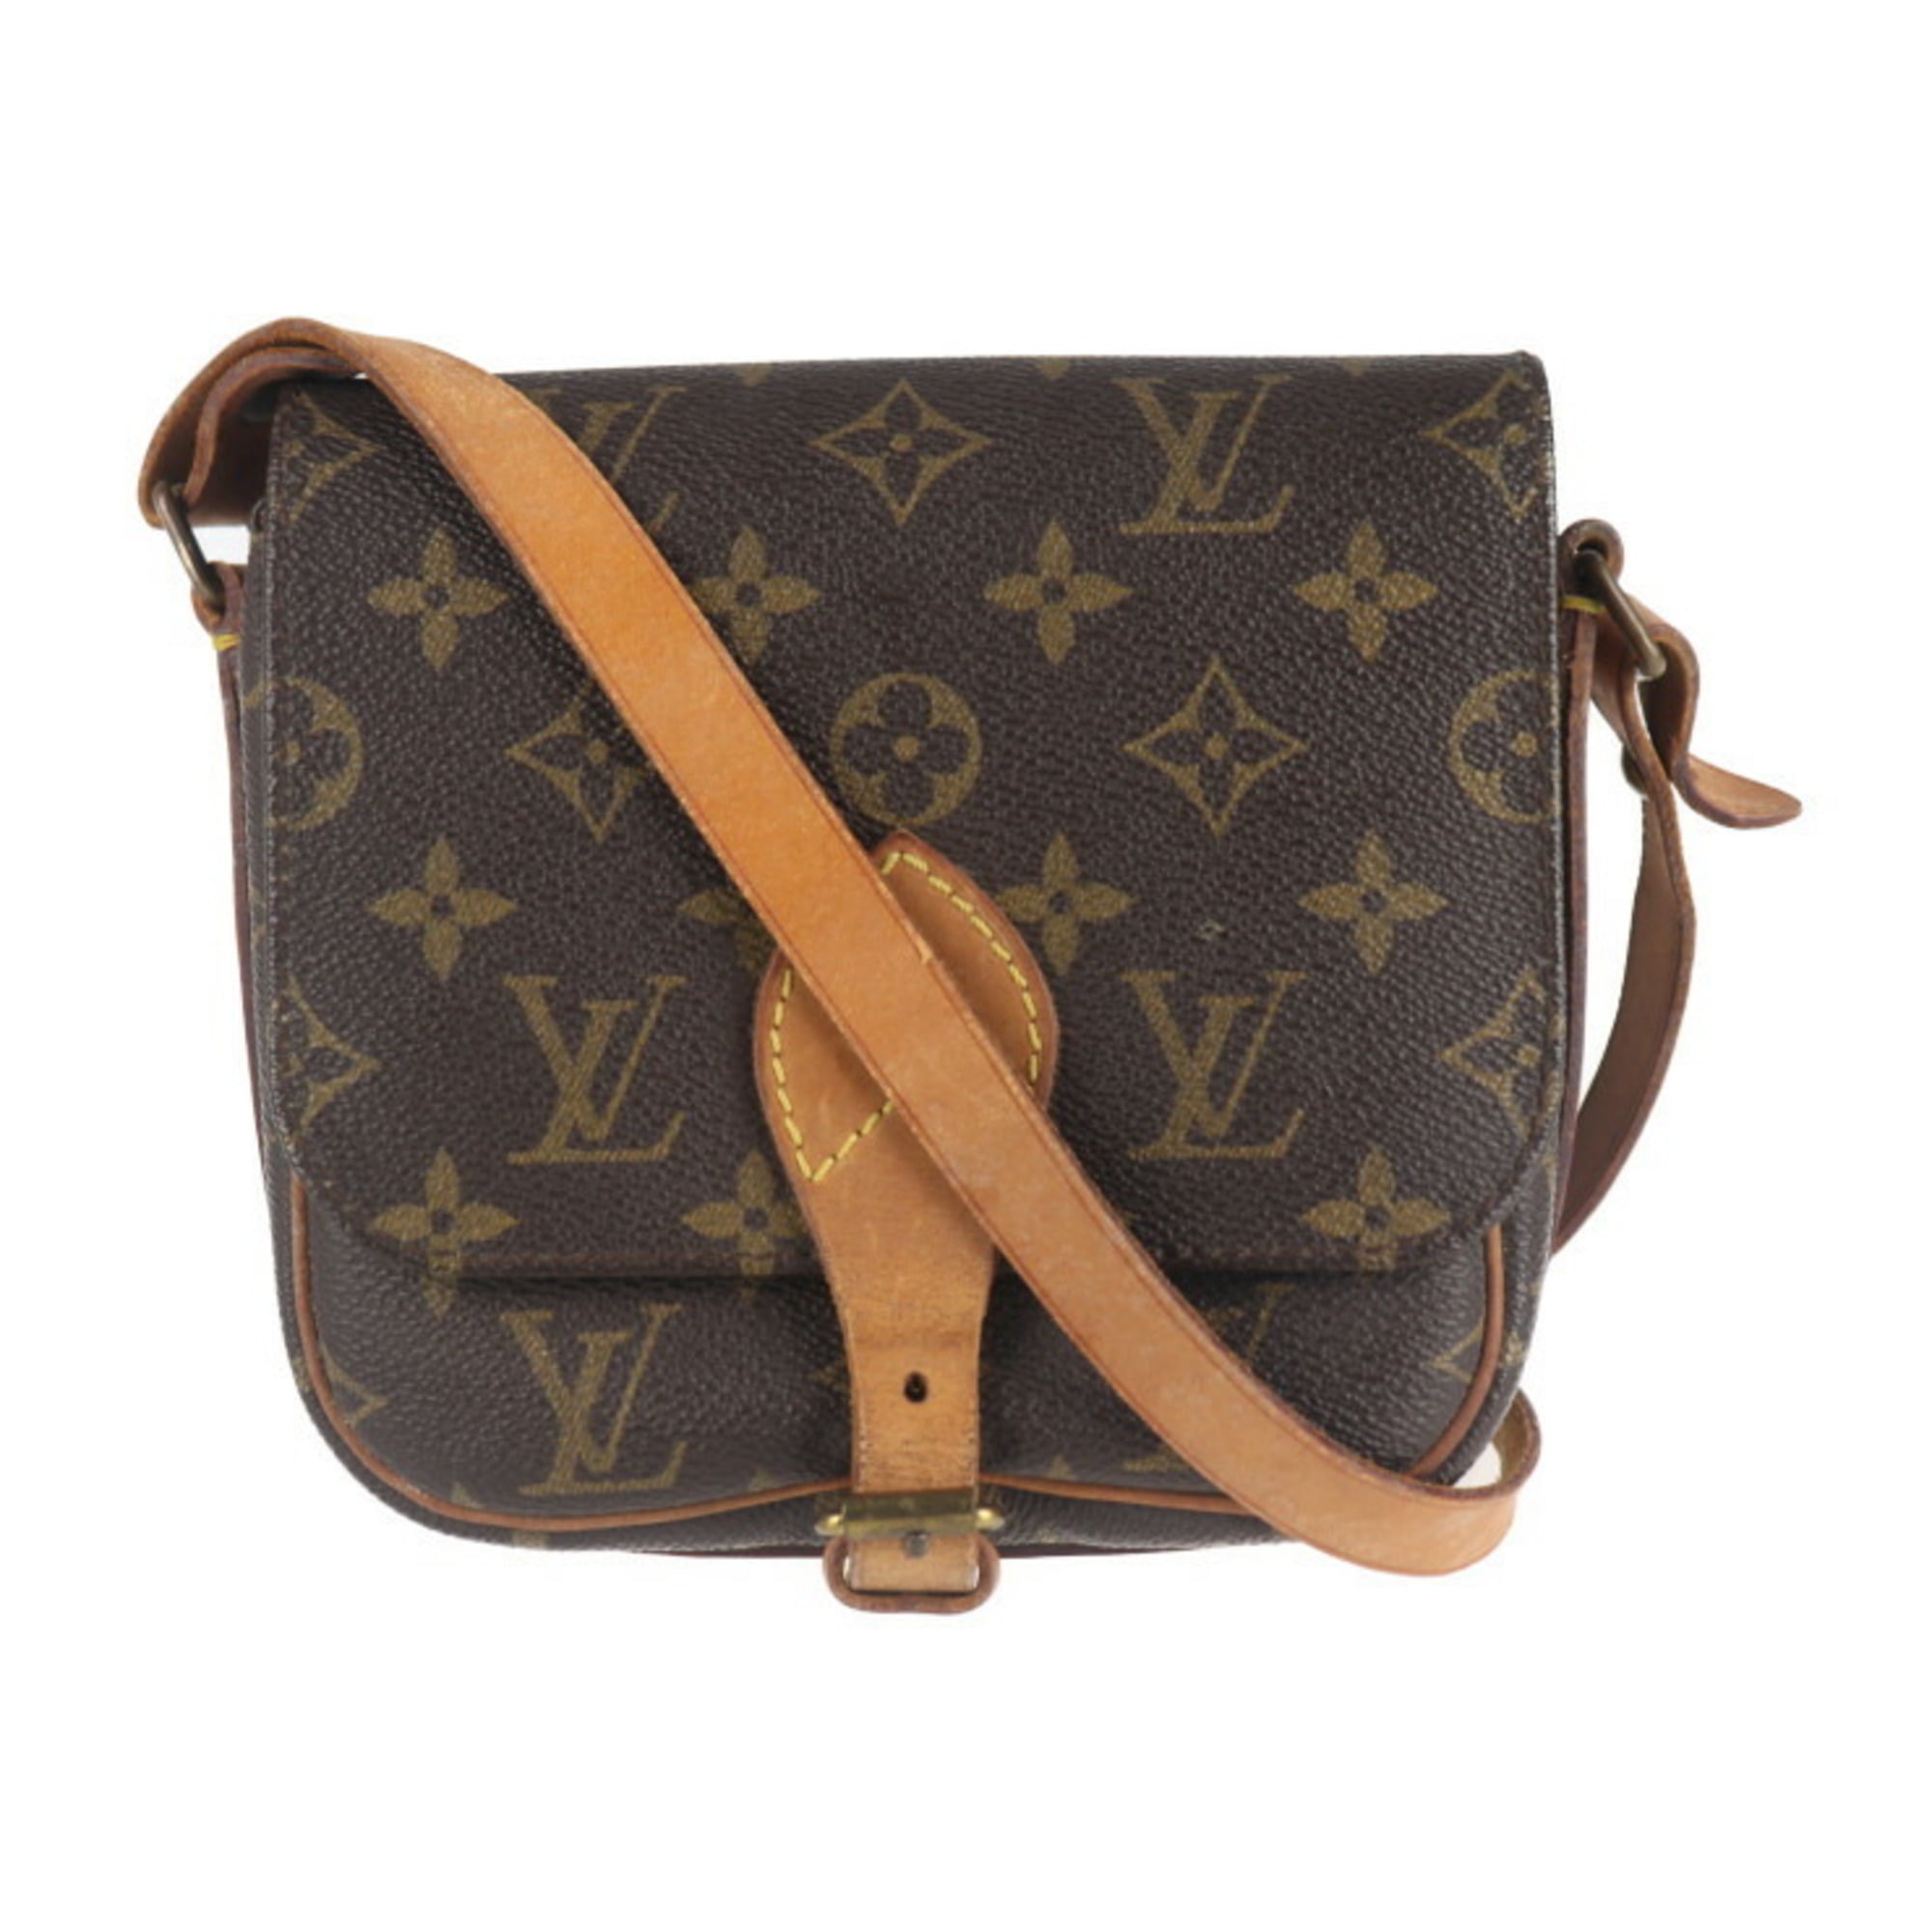 Louis Vuitton, Bags, Authentic Louis Vuitton Shoulder Bag Mi125 Used